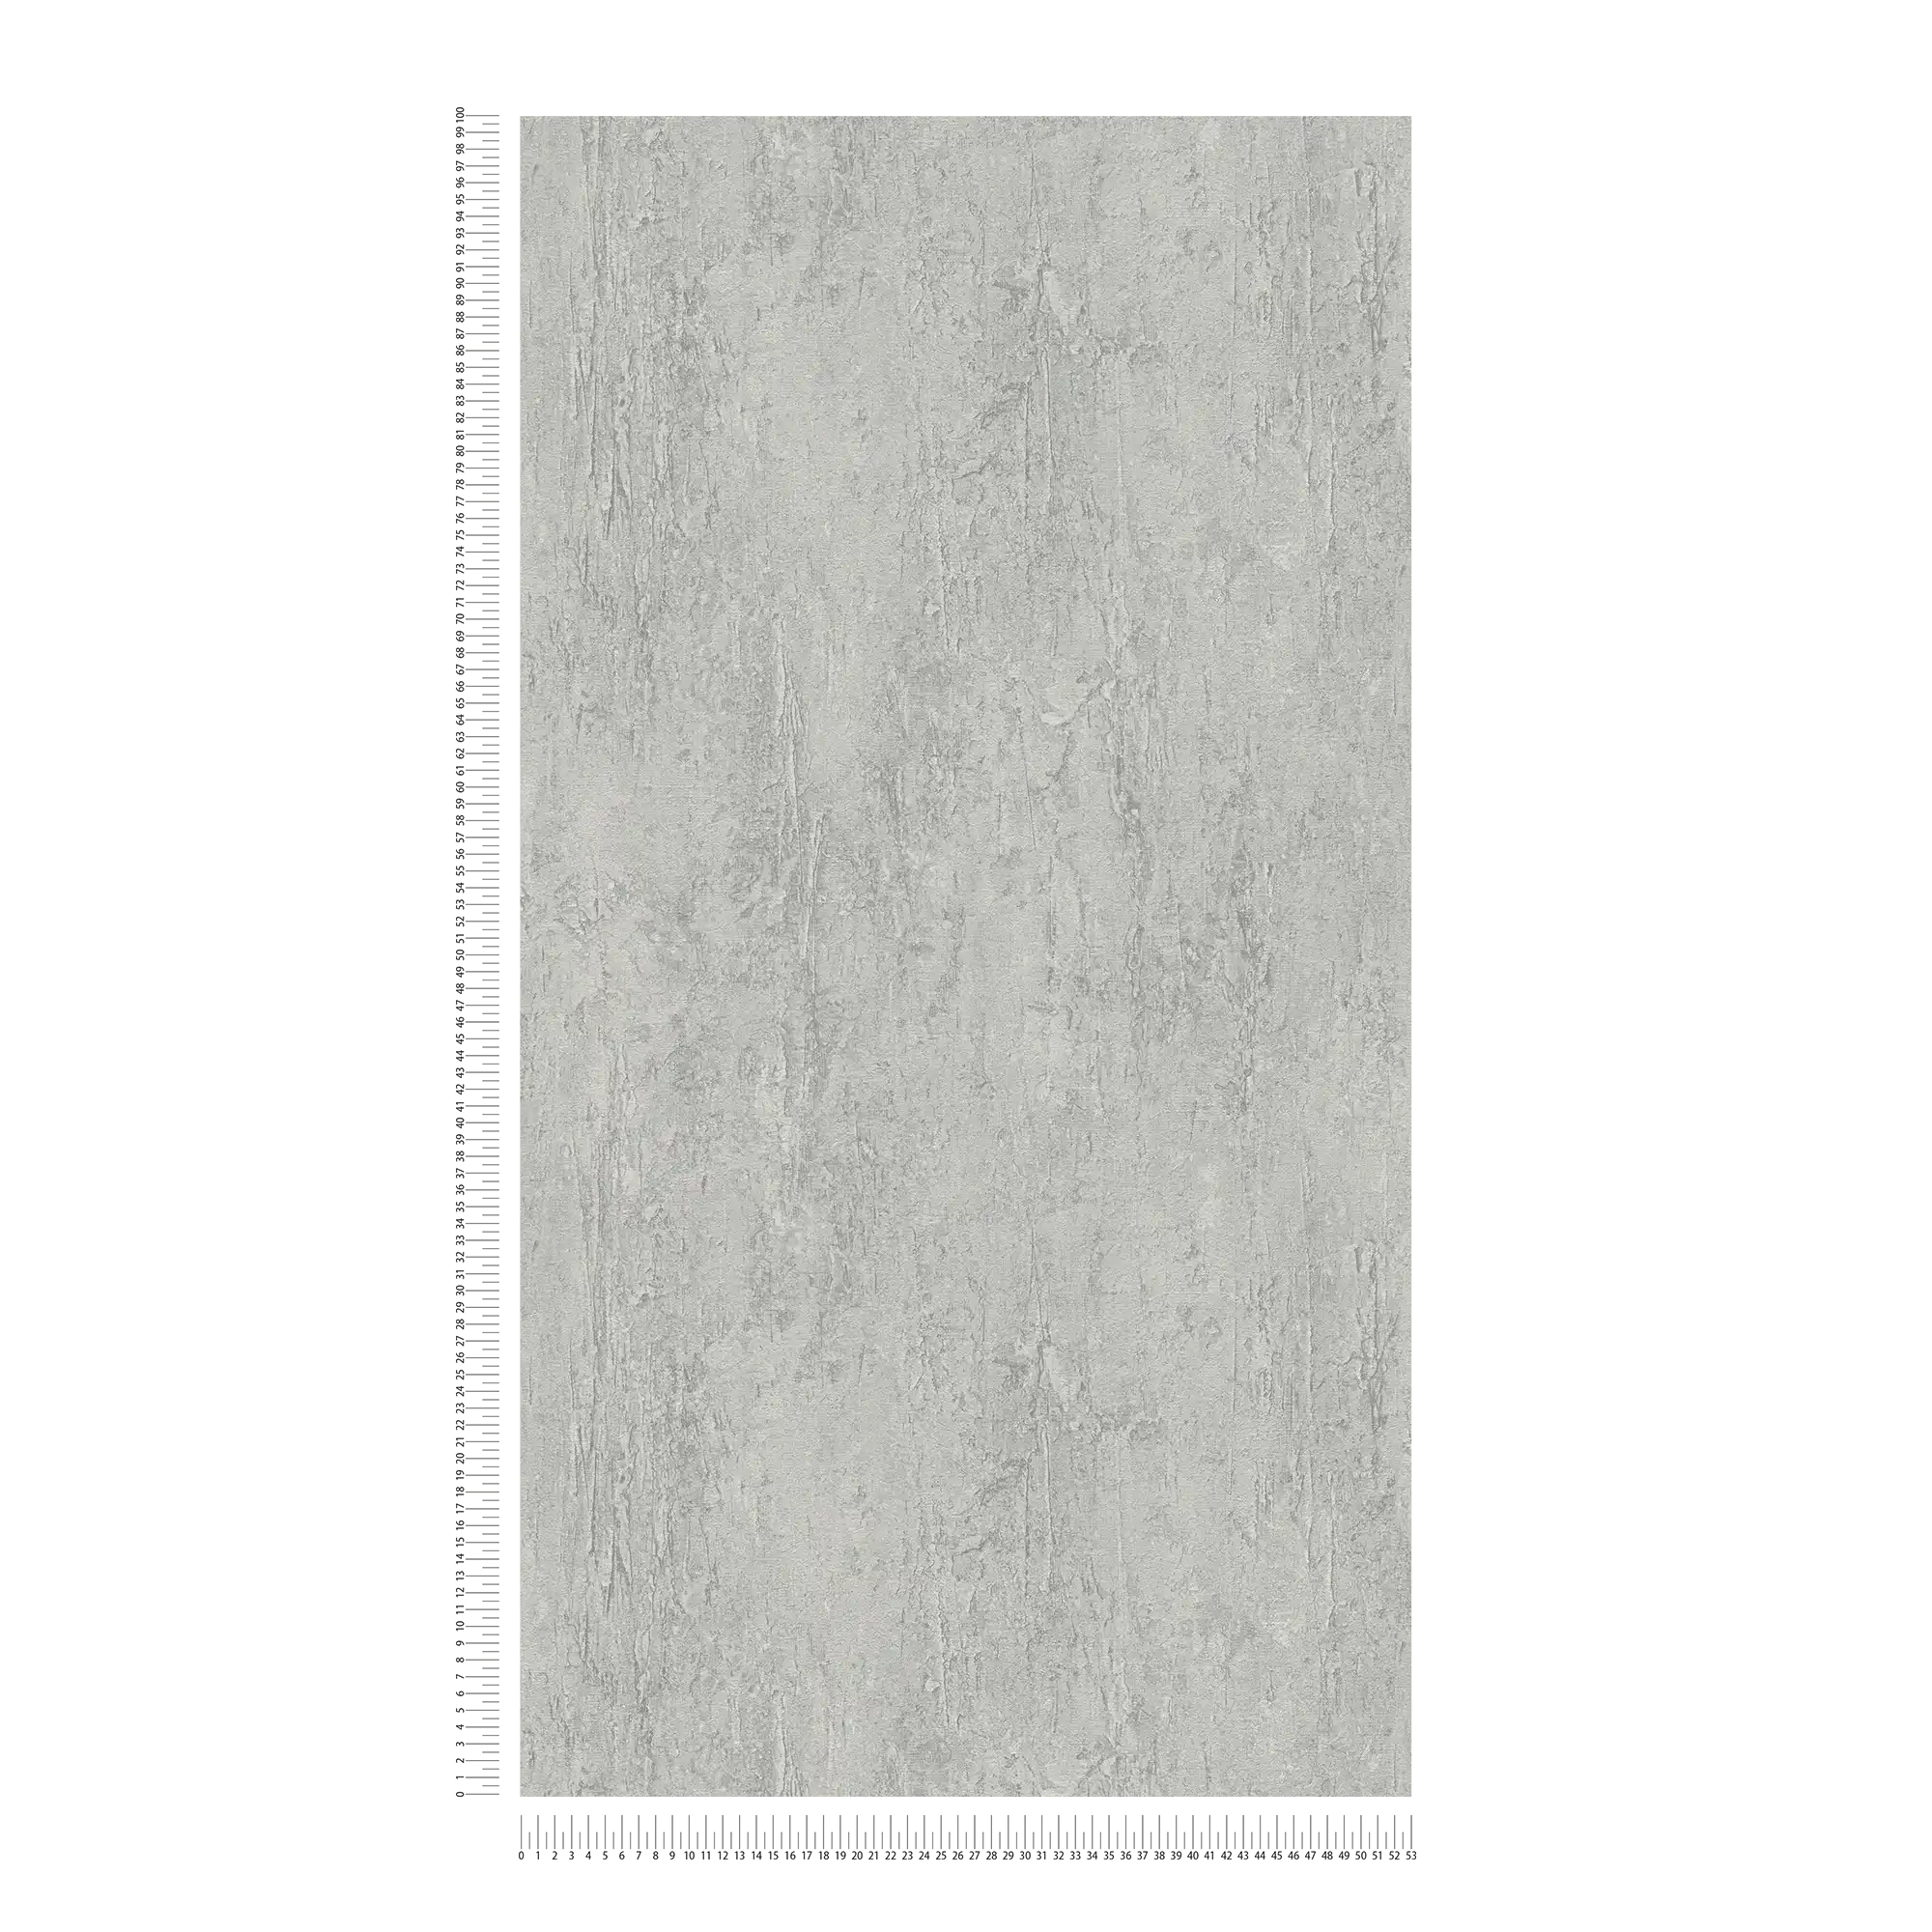             Carta da parati in tessuto non tessuto con motivo a trama naturale e effetto cemento - grigio
        